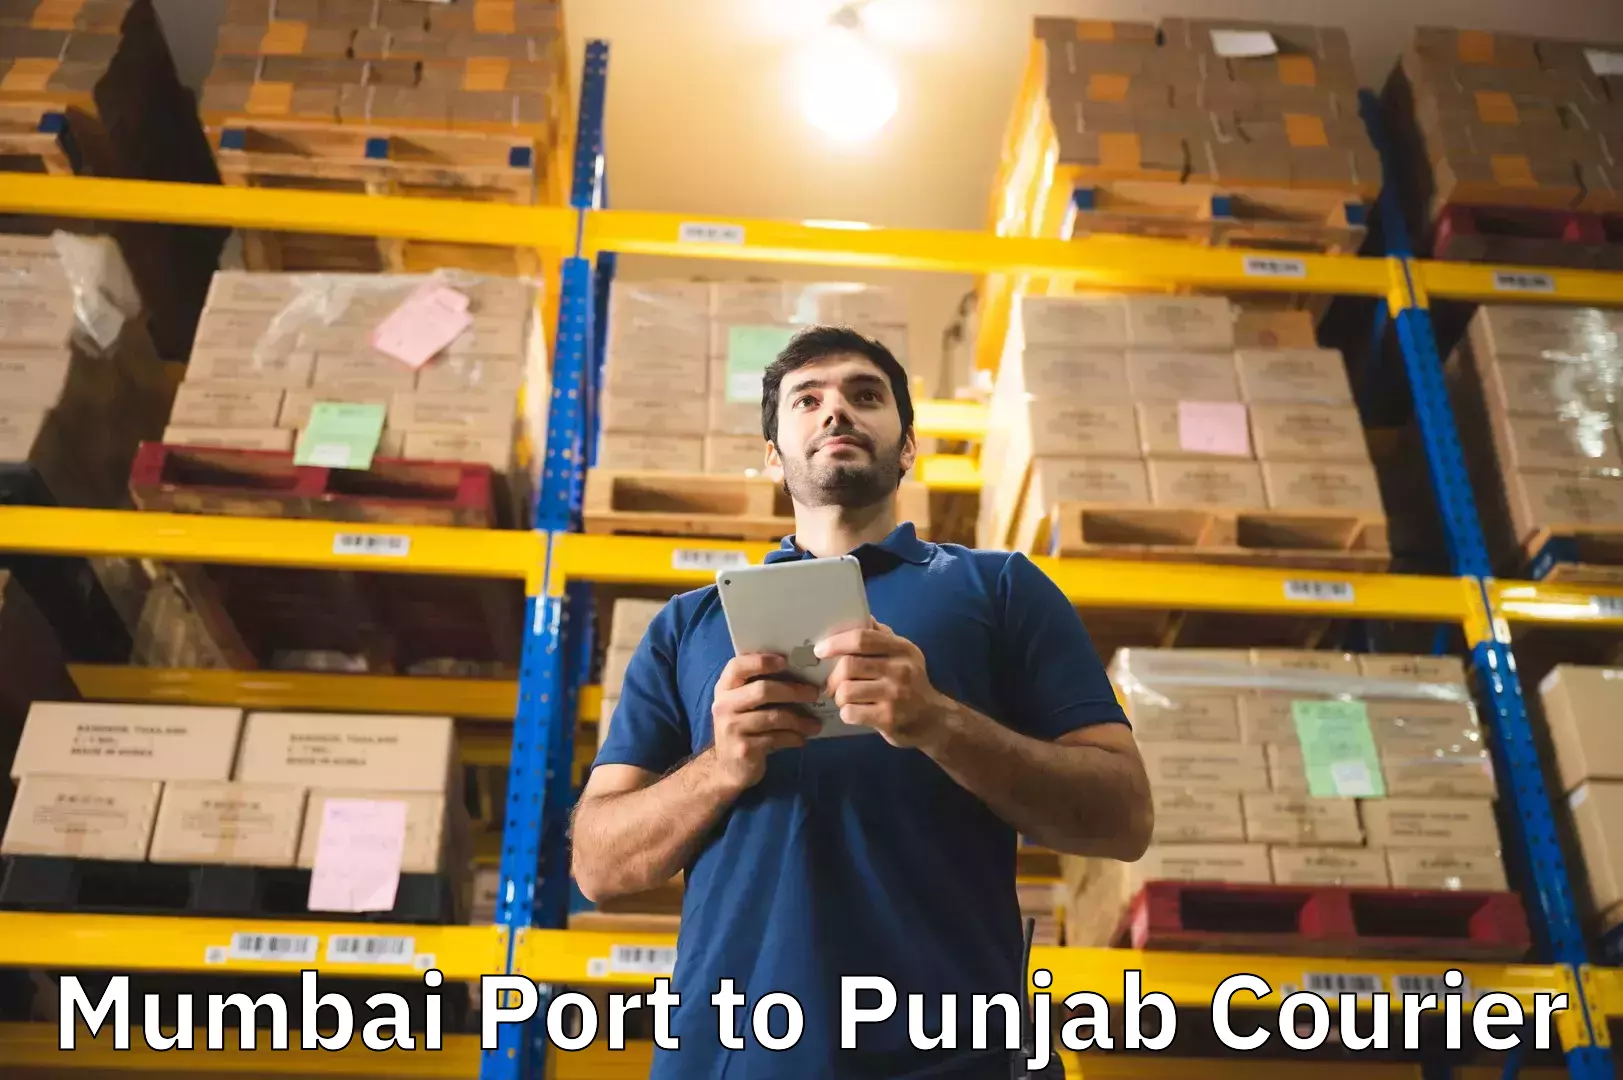 Business luggage transport Mumbai Port to Central University of Punjab Bathinda